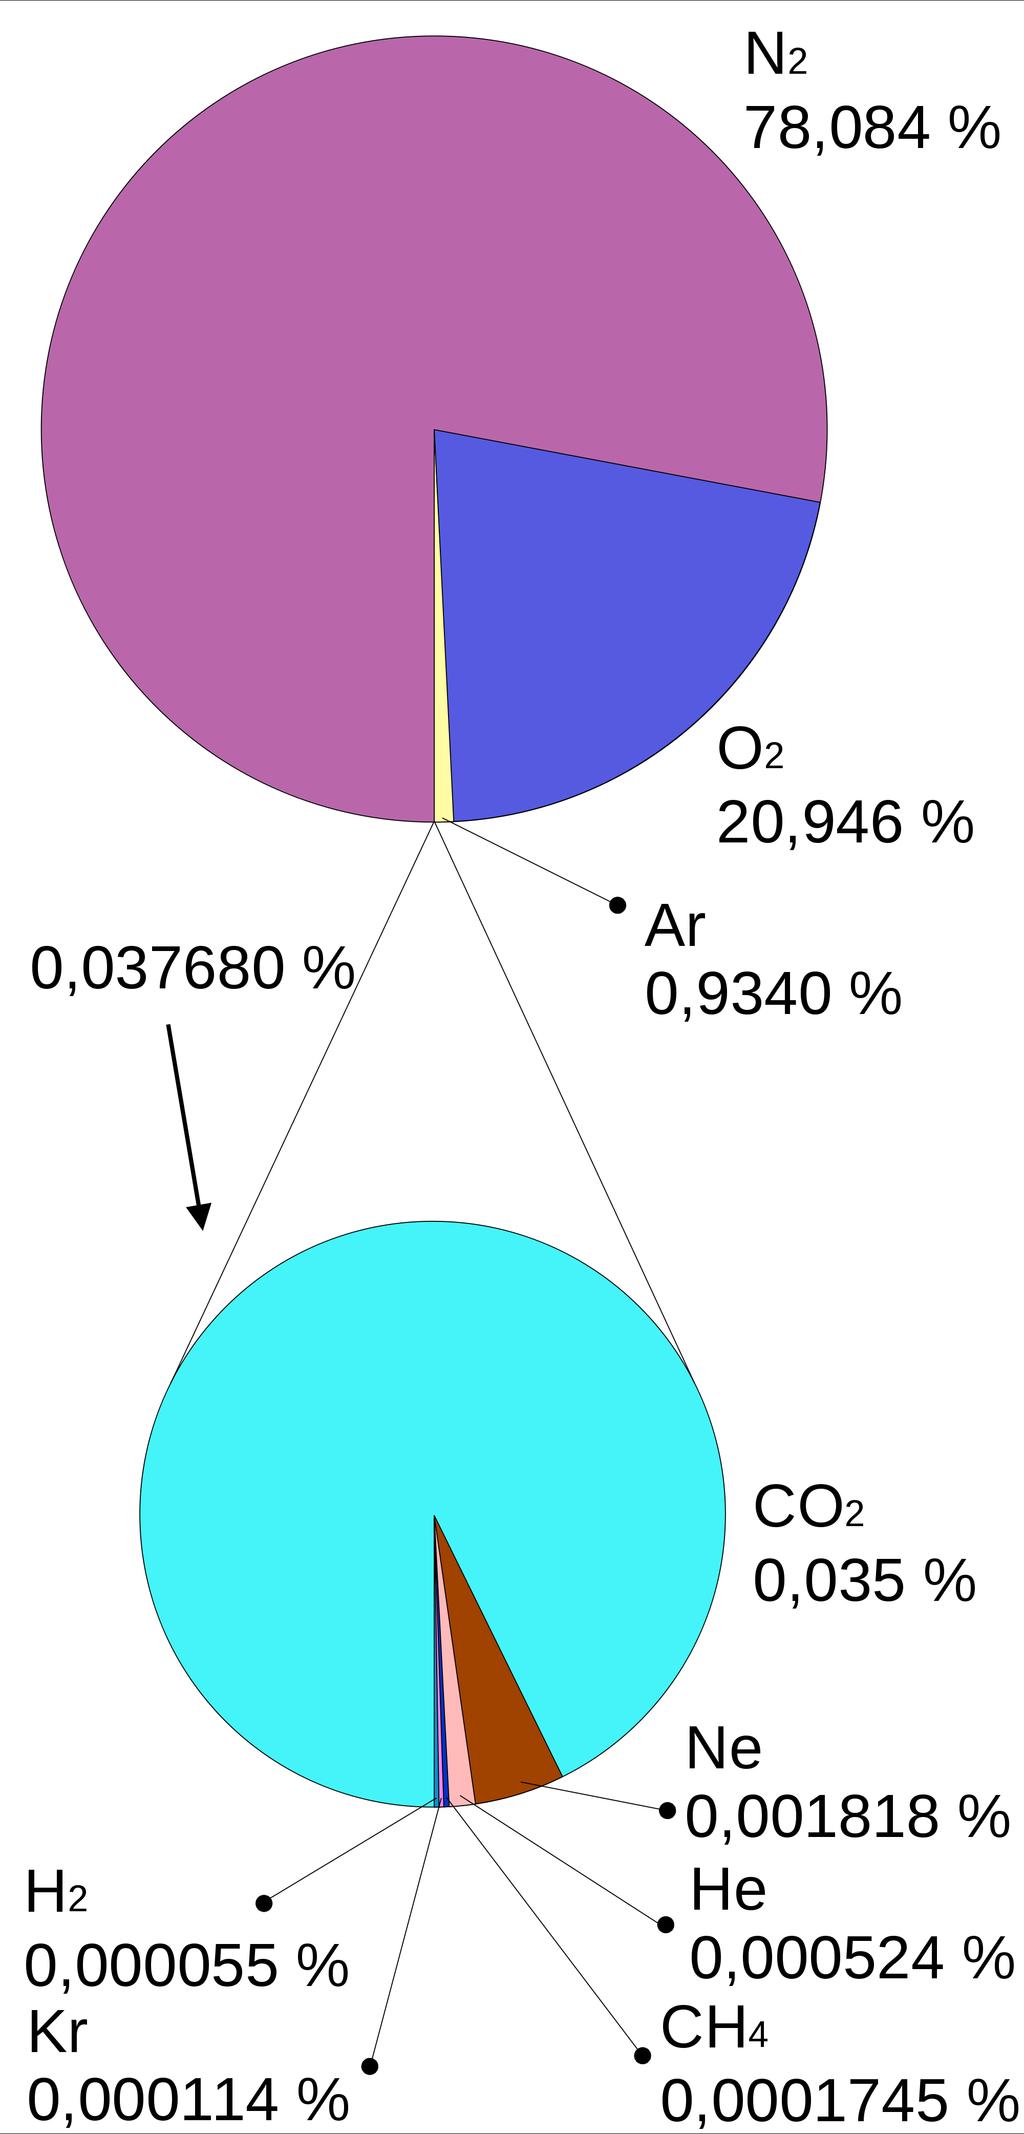 Composició de l atmosfera - Nitrogen (78%) - Oxigen (20,9%) - Ar (0,93%) - CO2 (0,03%) - Vapor d aigua (quantitat